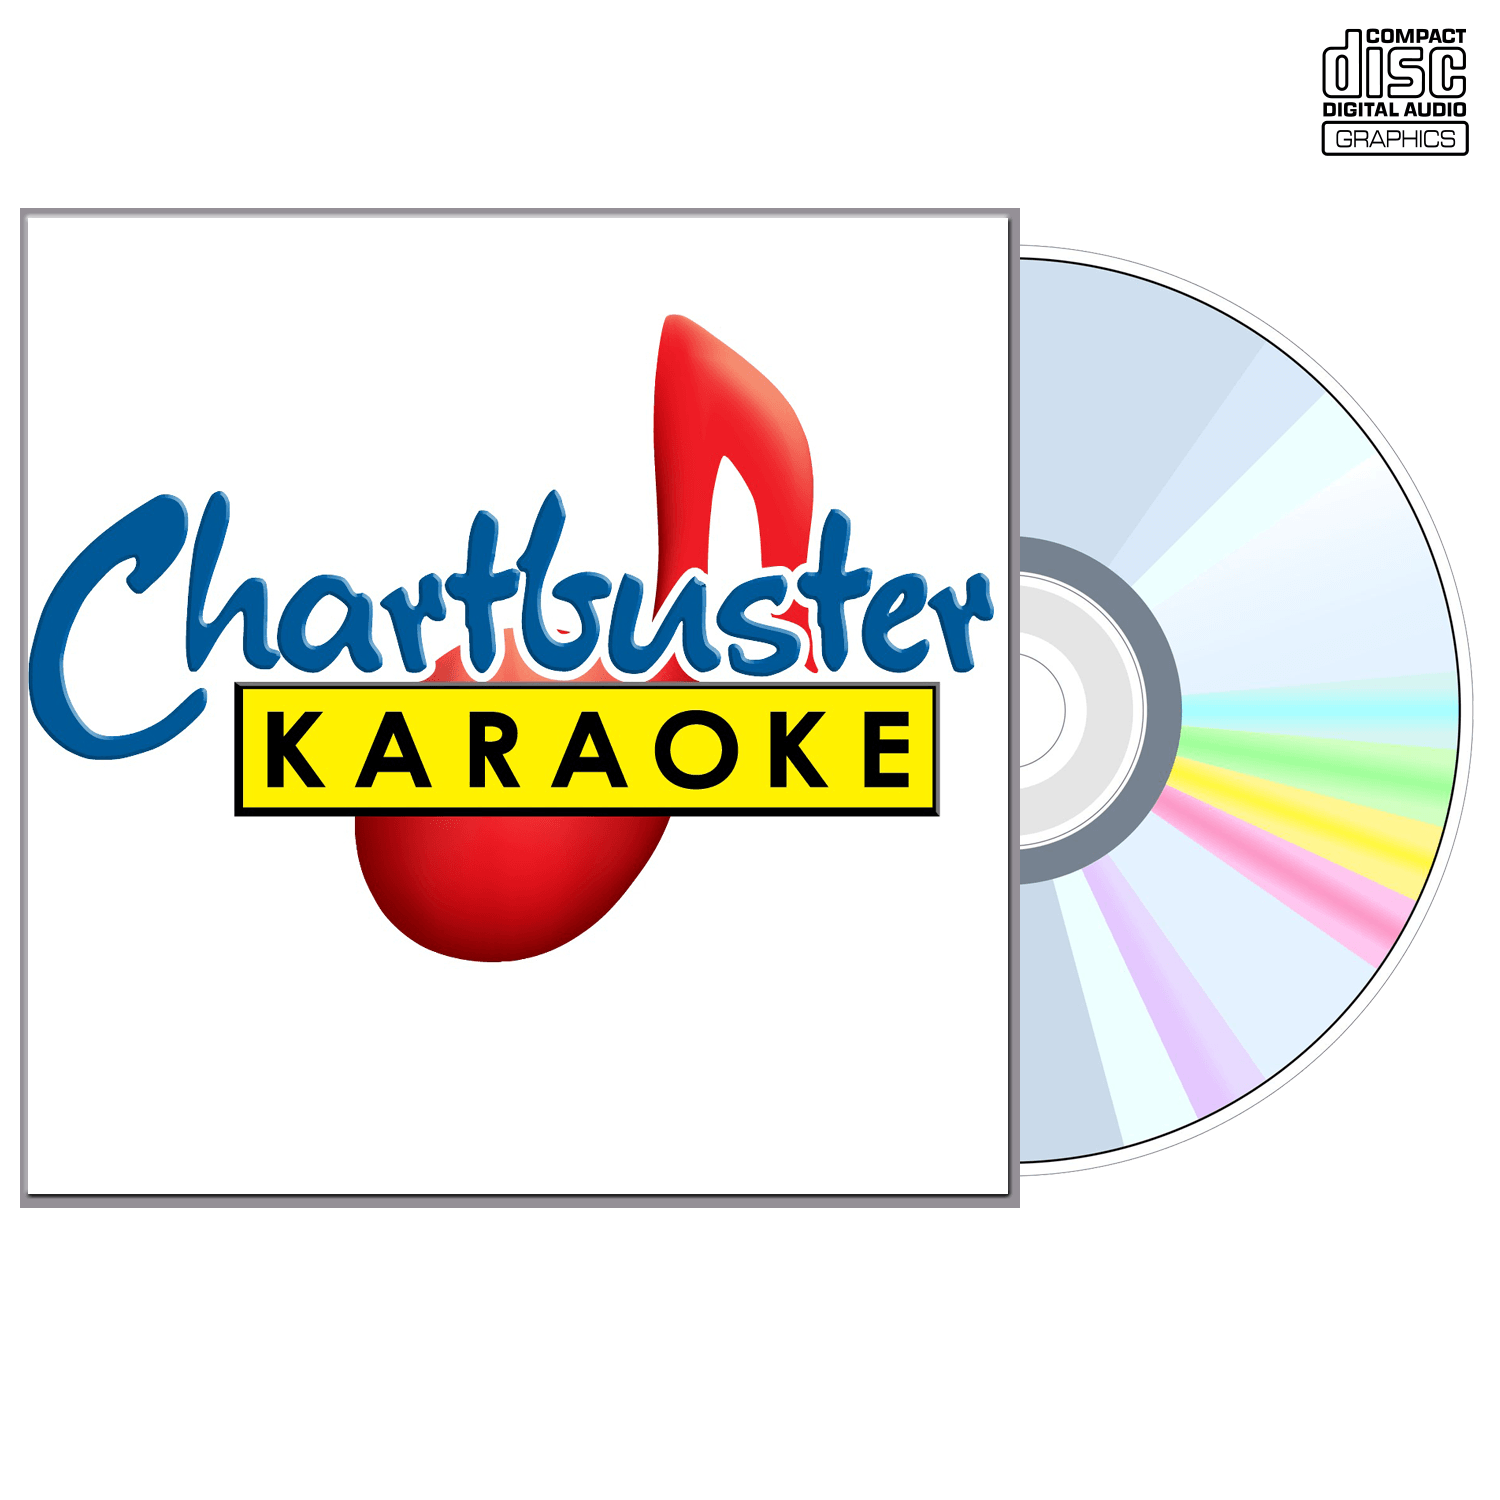 Sugar Ray - CD+G - Chartbuster Karaoke - Karaoke Home Entertainment